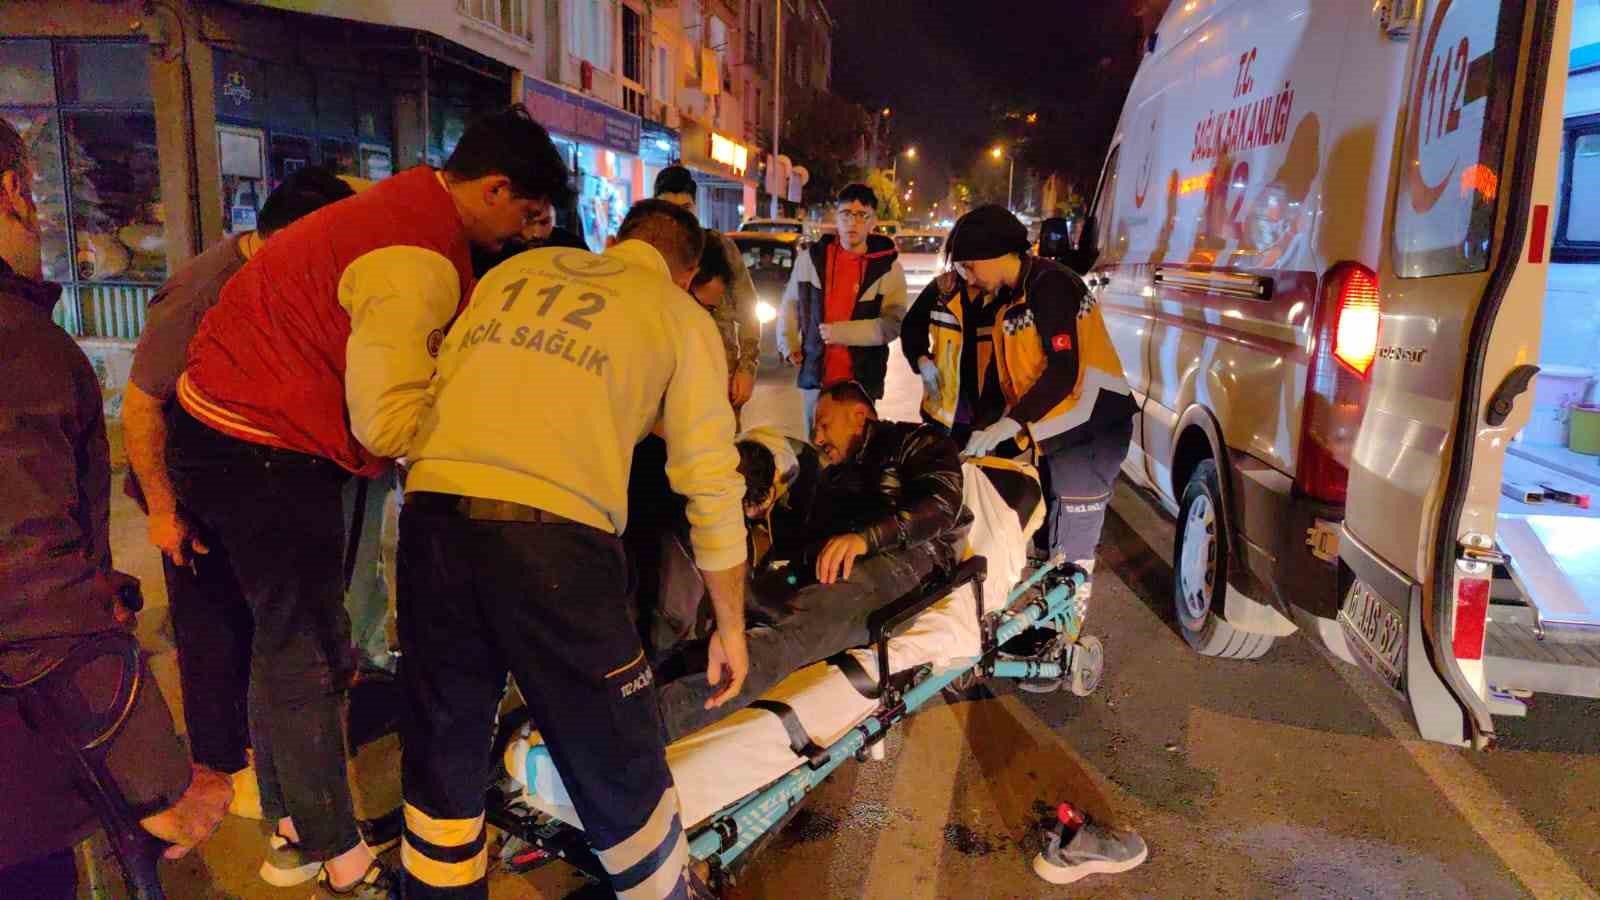 Bursa’da motosiklet sürücüsü ölümden döndü